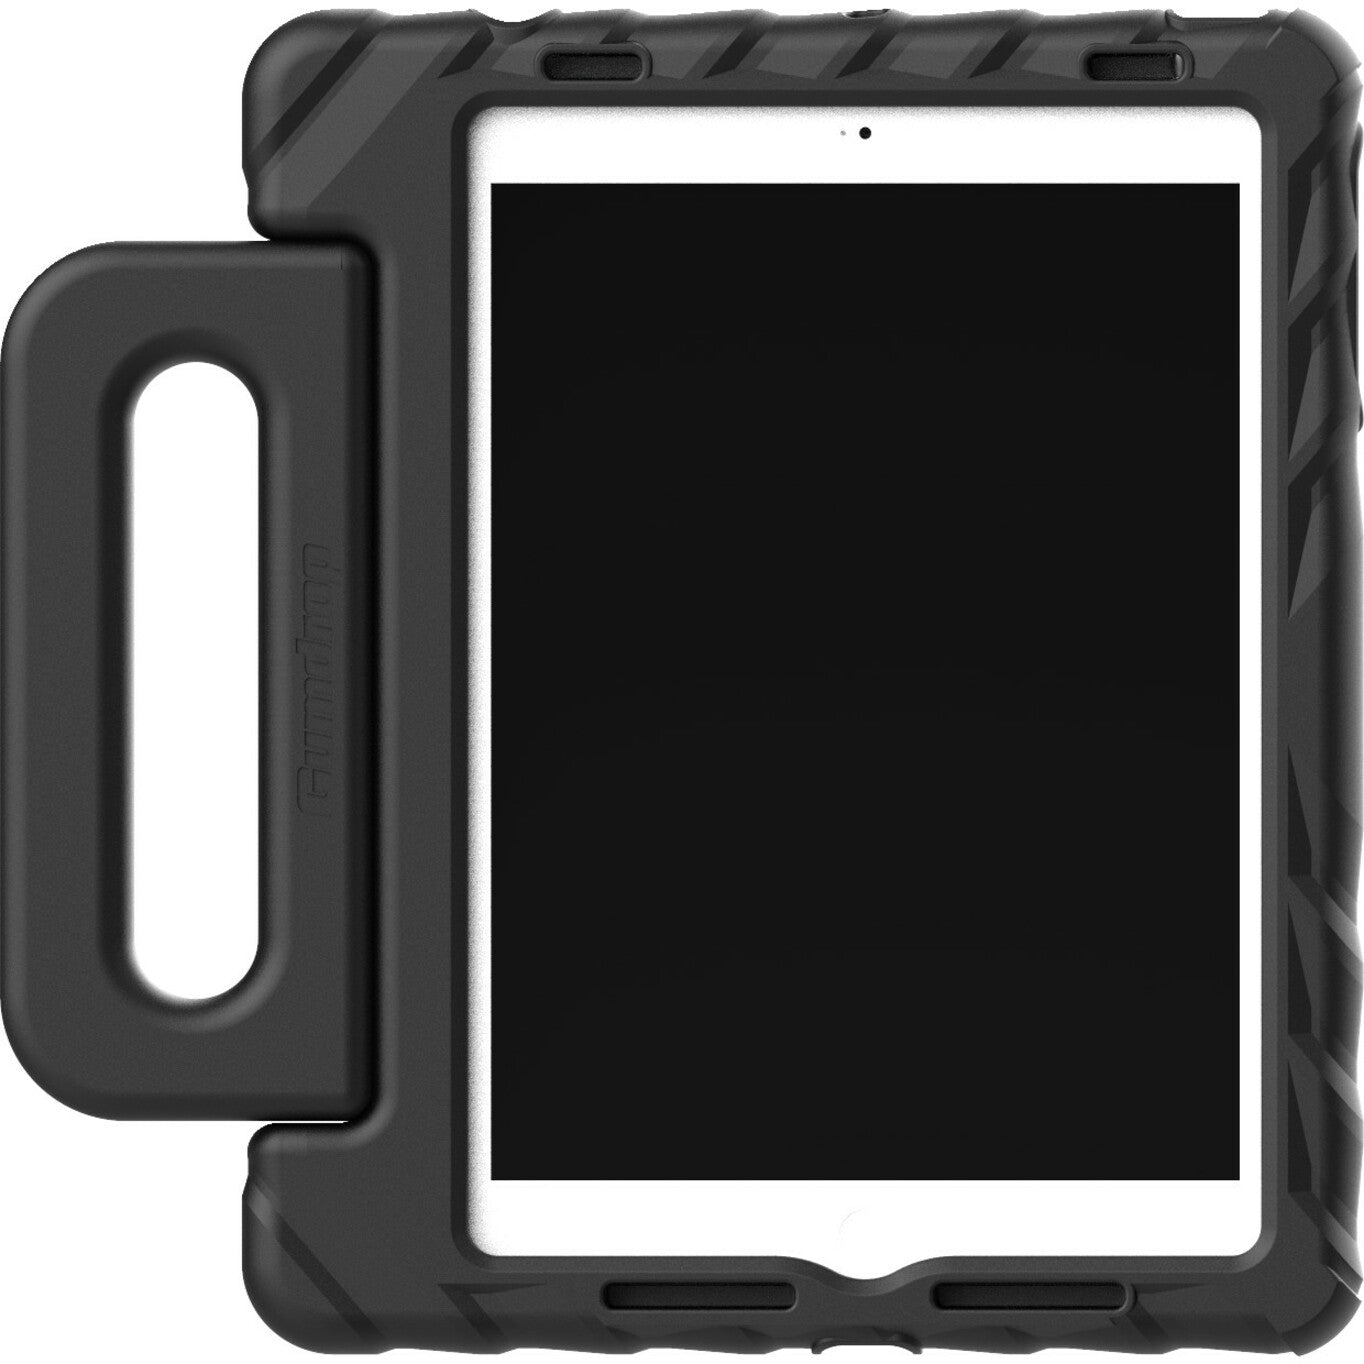 Gumdrop FoamTech Carrying Case for 9.7" Apple iPad Pro (2018) iPad Pro iPad Pro (2017) iPad Air iPad Air 2 Tablet - Black